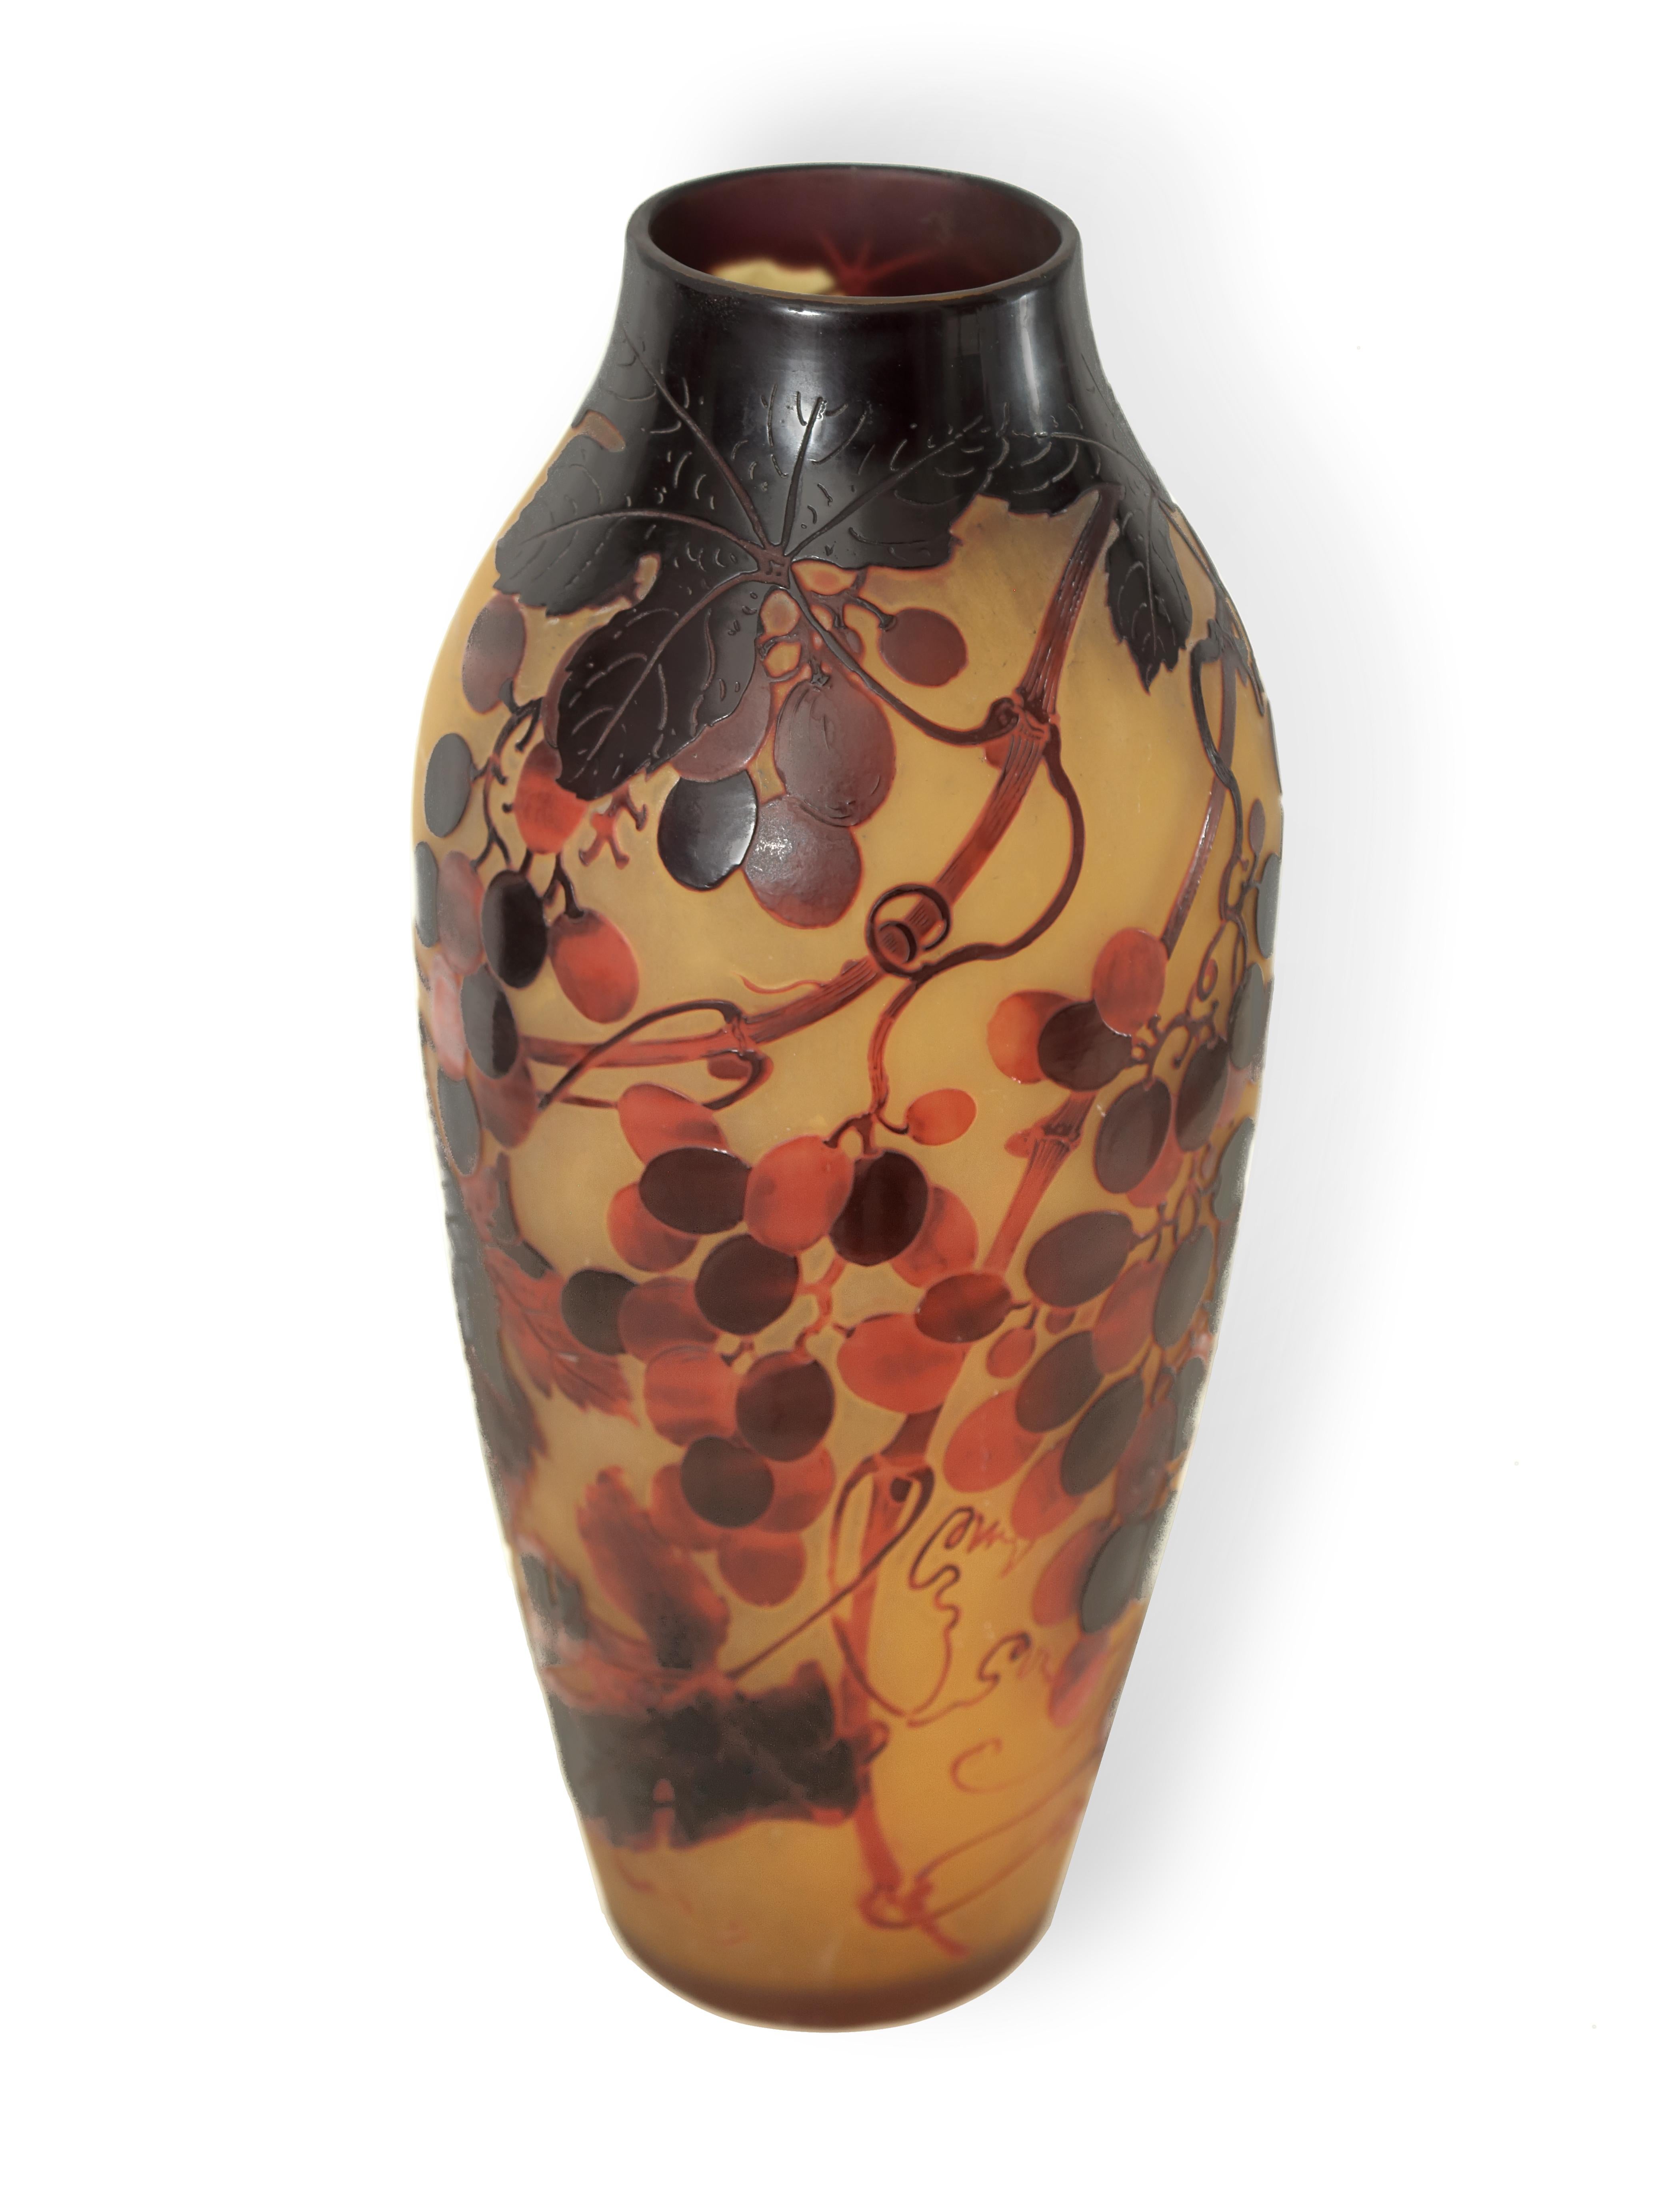 Monumentale, säuregeätzte Kamee-Vase aus rotem und gelbem Jugendstil-Kunstglas. Schöne dekorative Vase im Art Deco-Jugendstil. Der Zustand ist gut, mit alters- und gebrauchsbedingten Gebrauchsspuren.